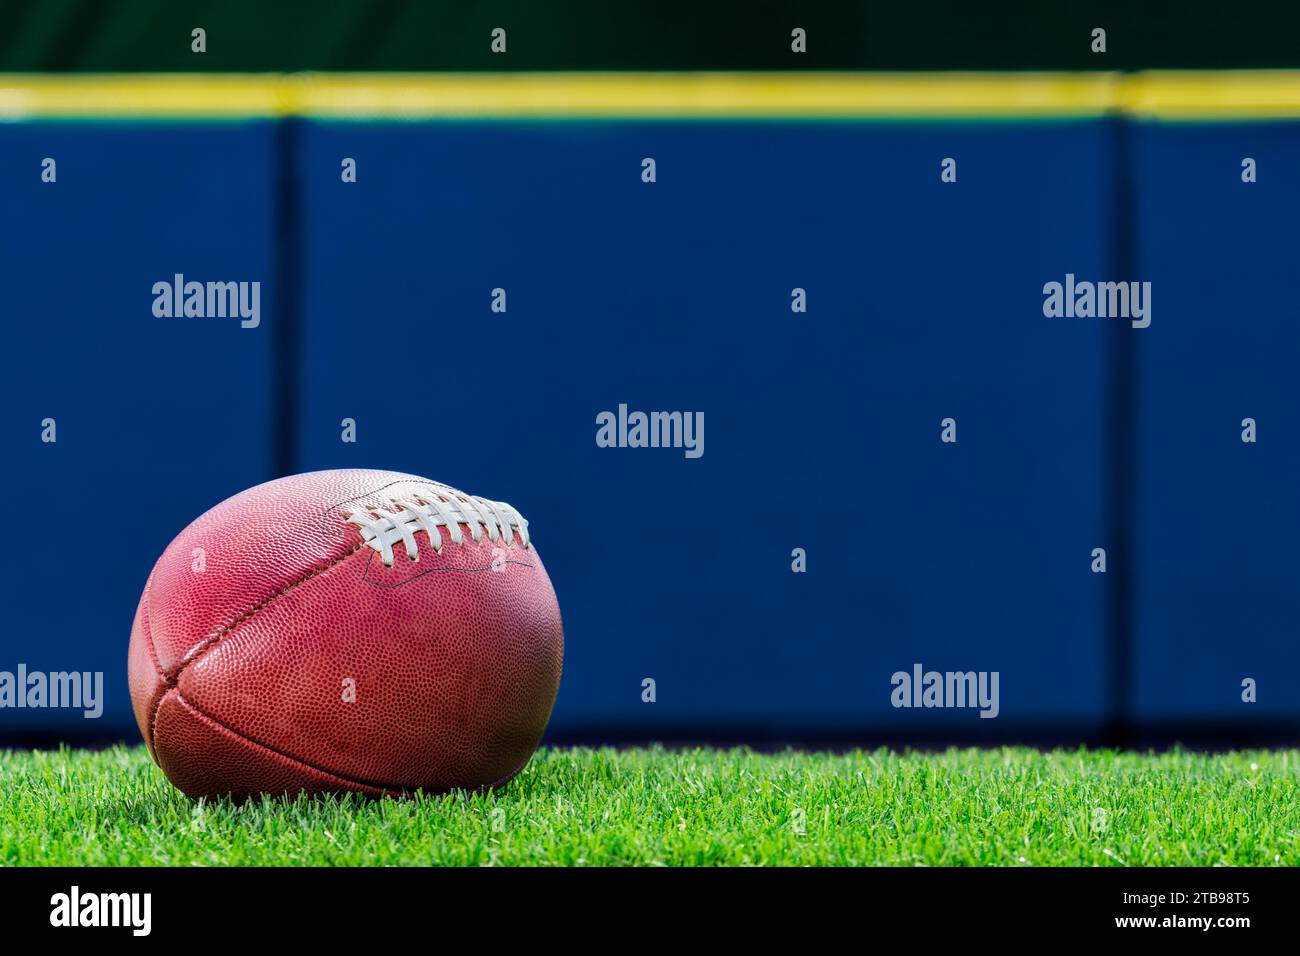 Vista dall'angolo basso di un football americano professionista seduto sul terreno erboso di uno stadio con parete imbottita blu sullo sfondo. Foto Stock